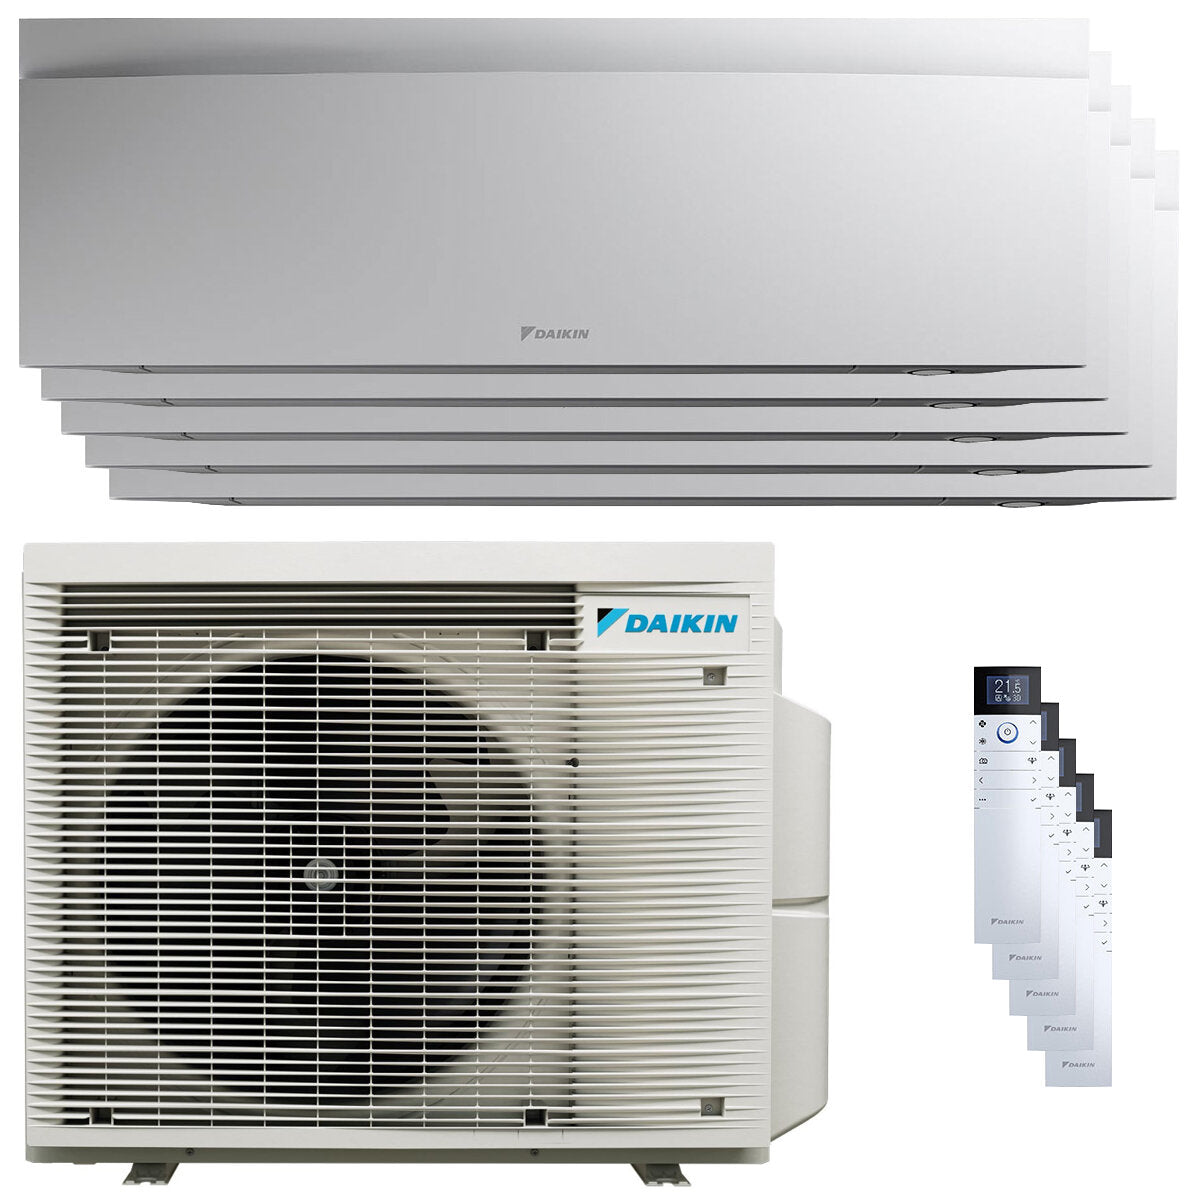 Daikin Emura 3 air conditioner penta split 7000+9000+9000+9000+15000 BTU inverter A+ wifi outdoor unit 7.8 kW White